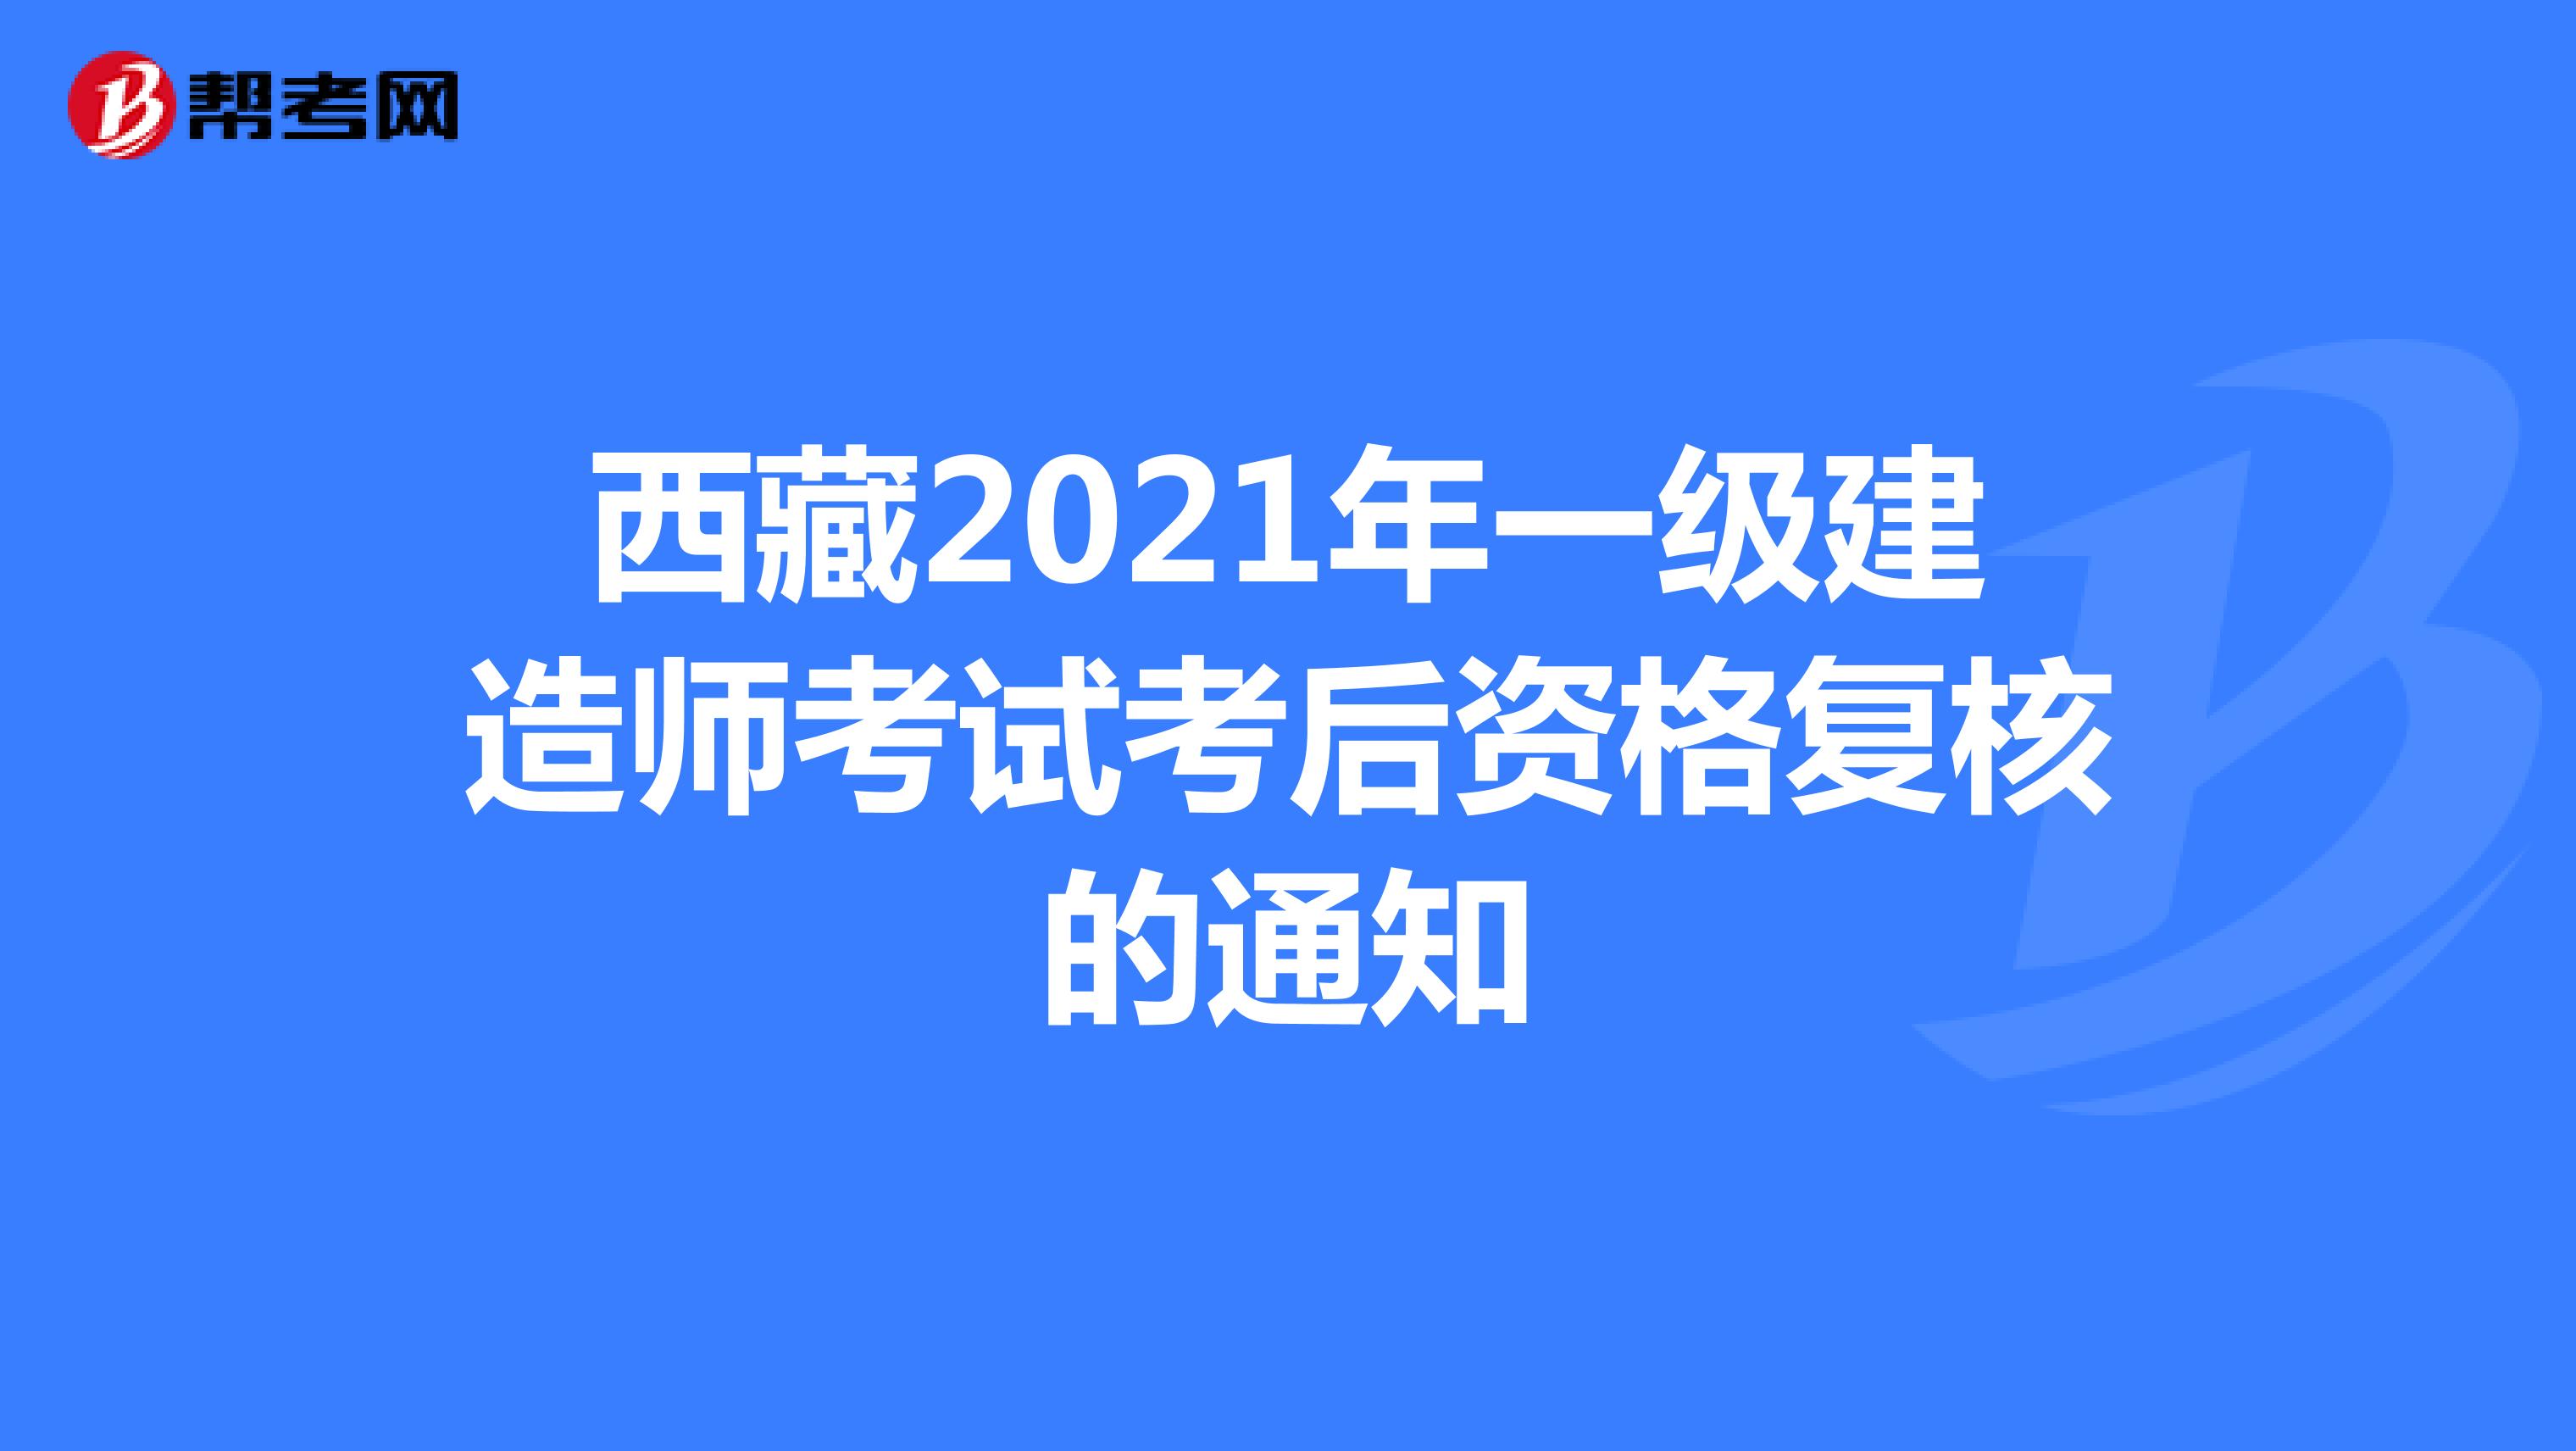 西藏2021年一级建造师考试考后资格复核的通知